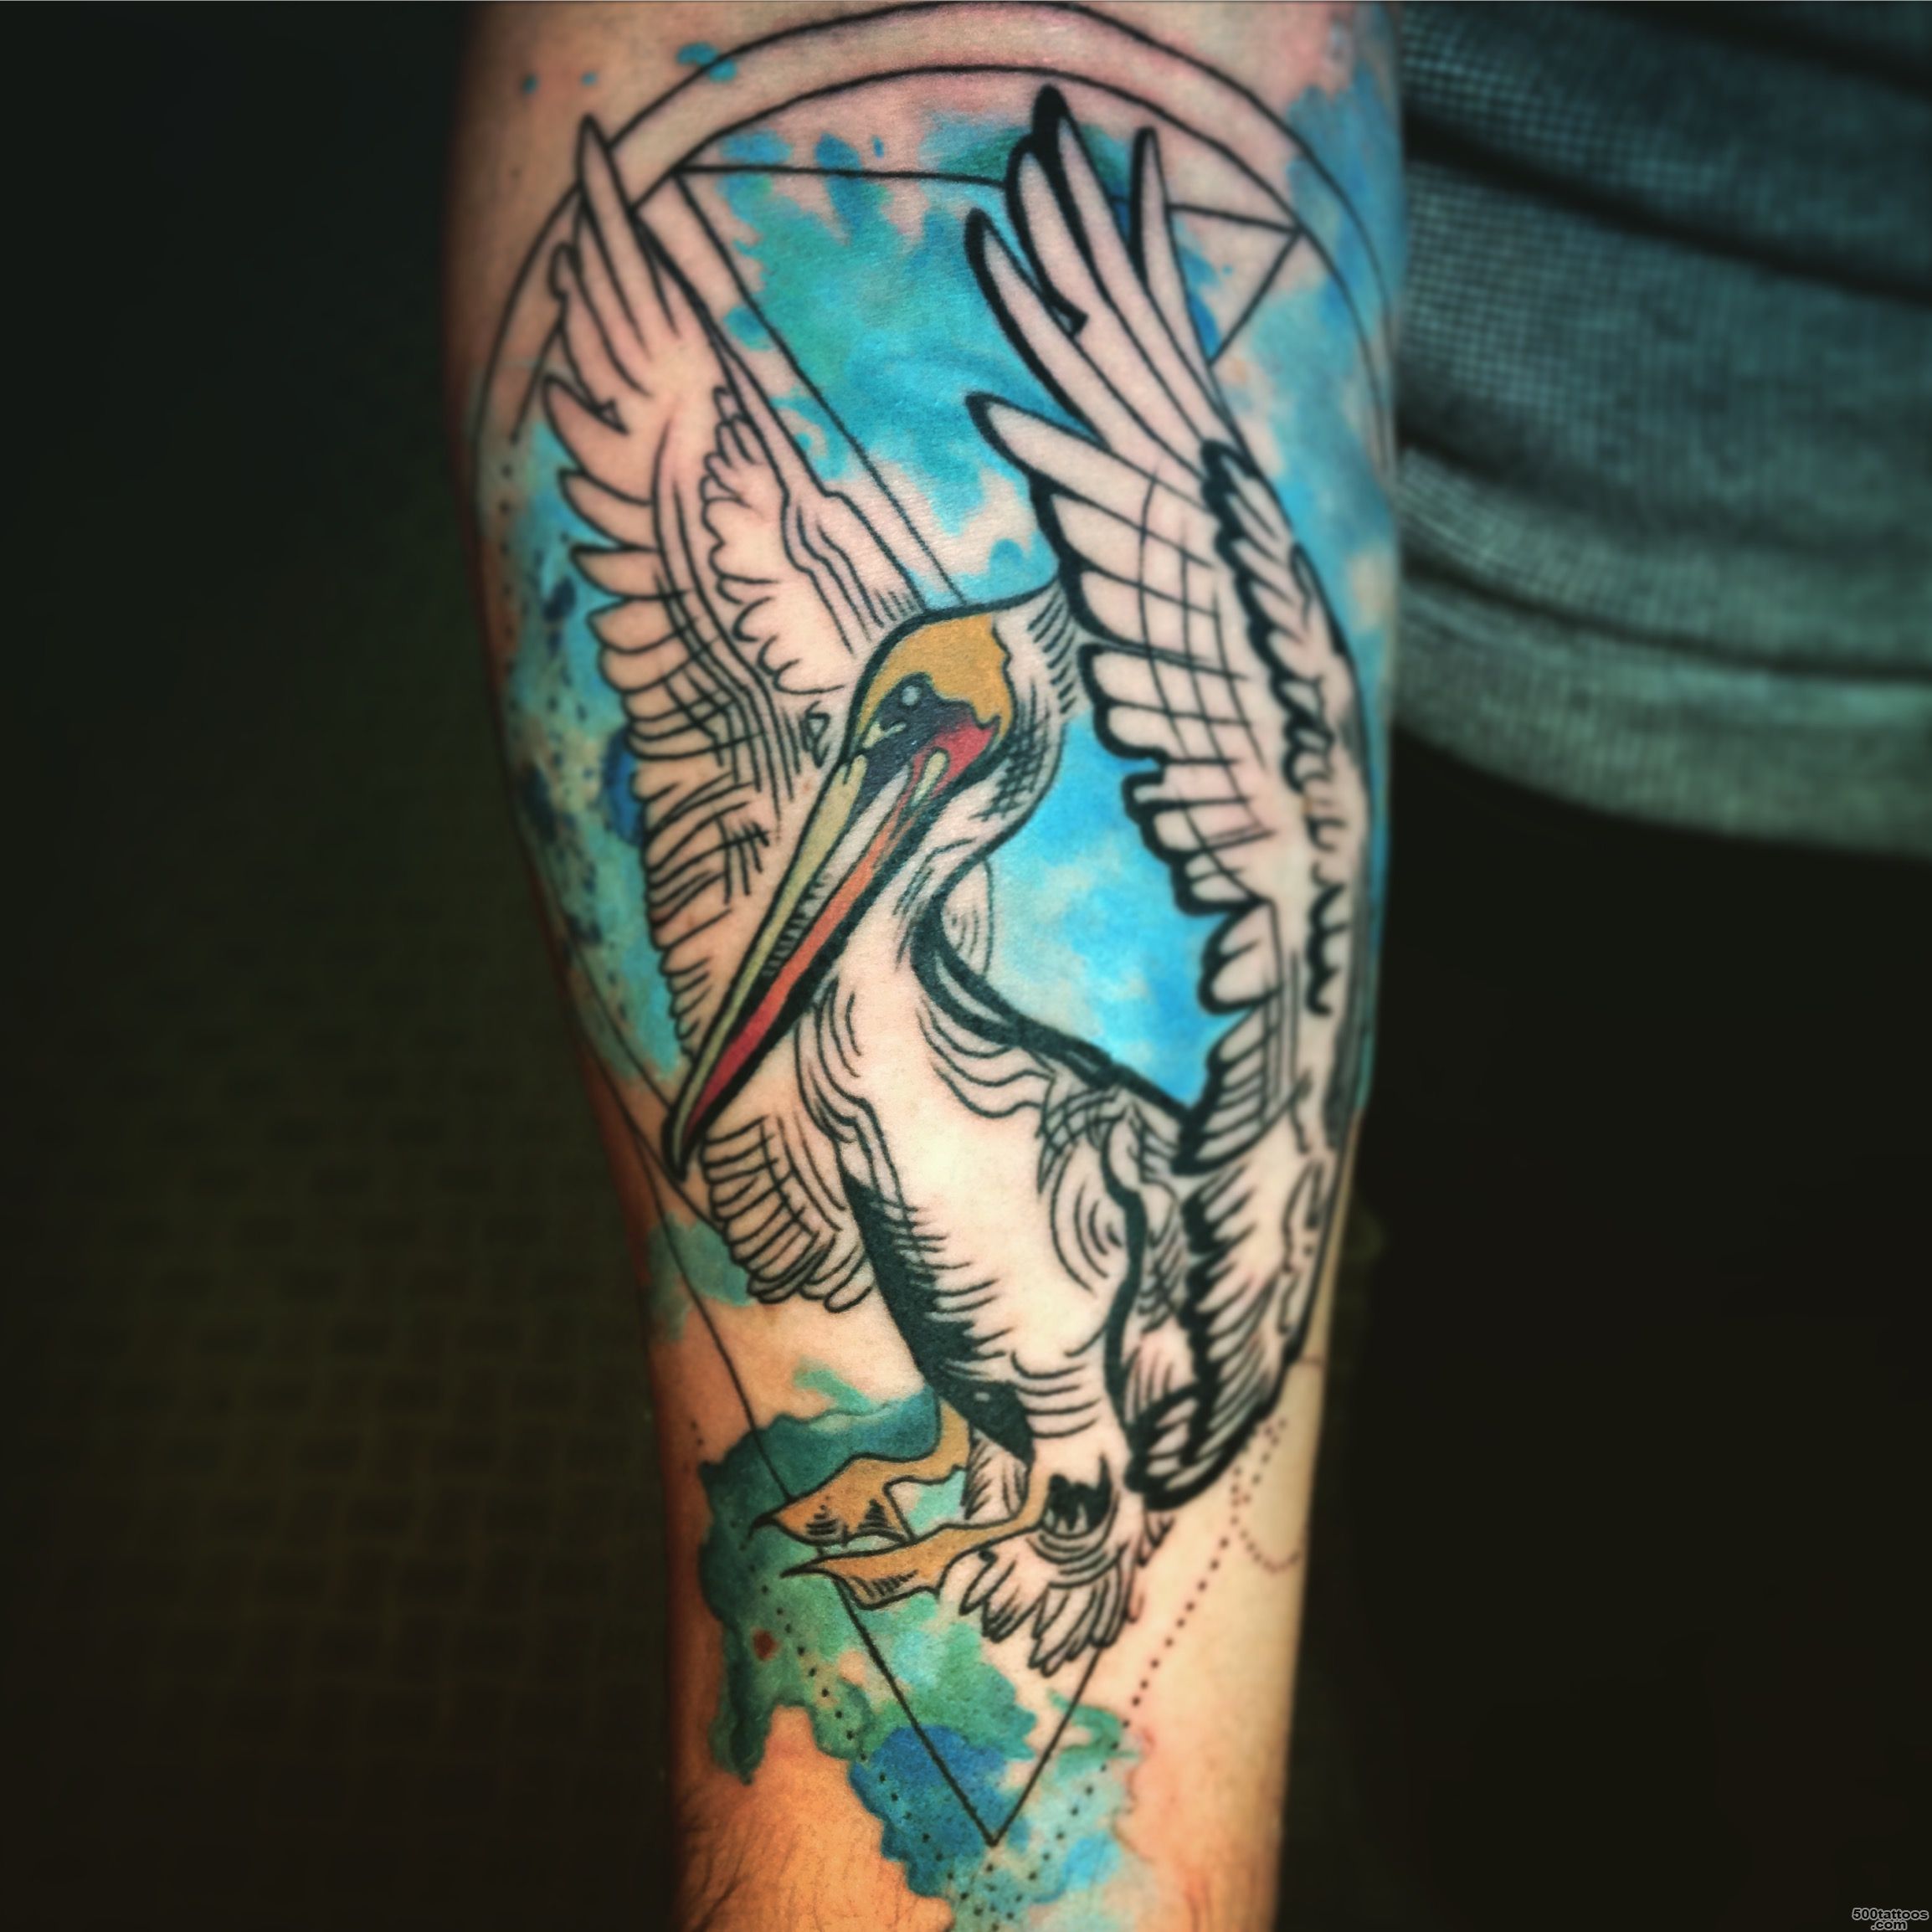 Brittany#39s pelican tattoo  Dream Masters Custom Tattoos_4